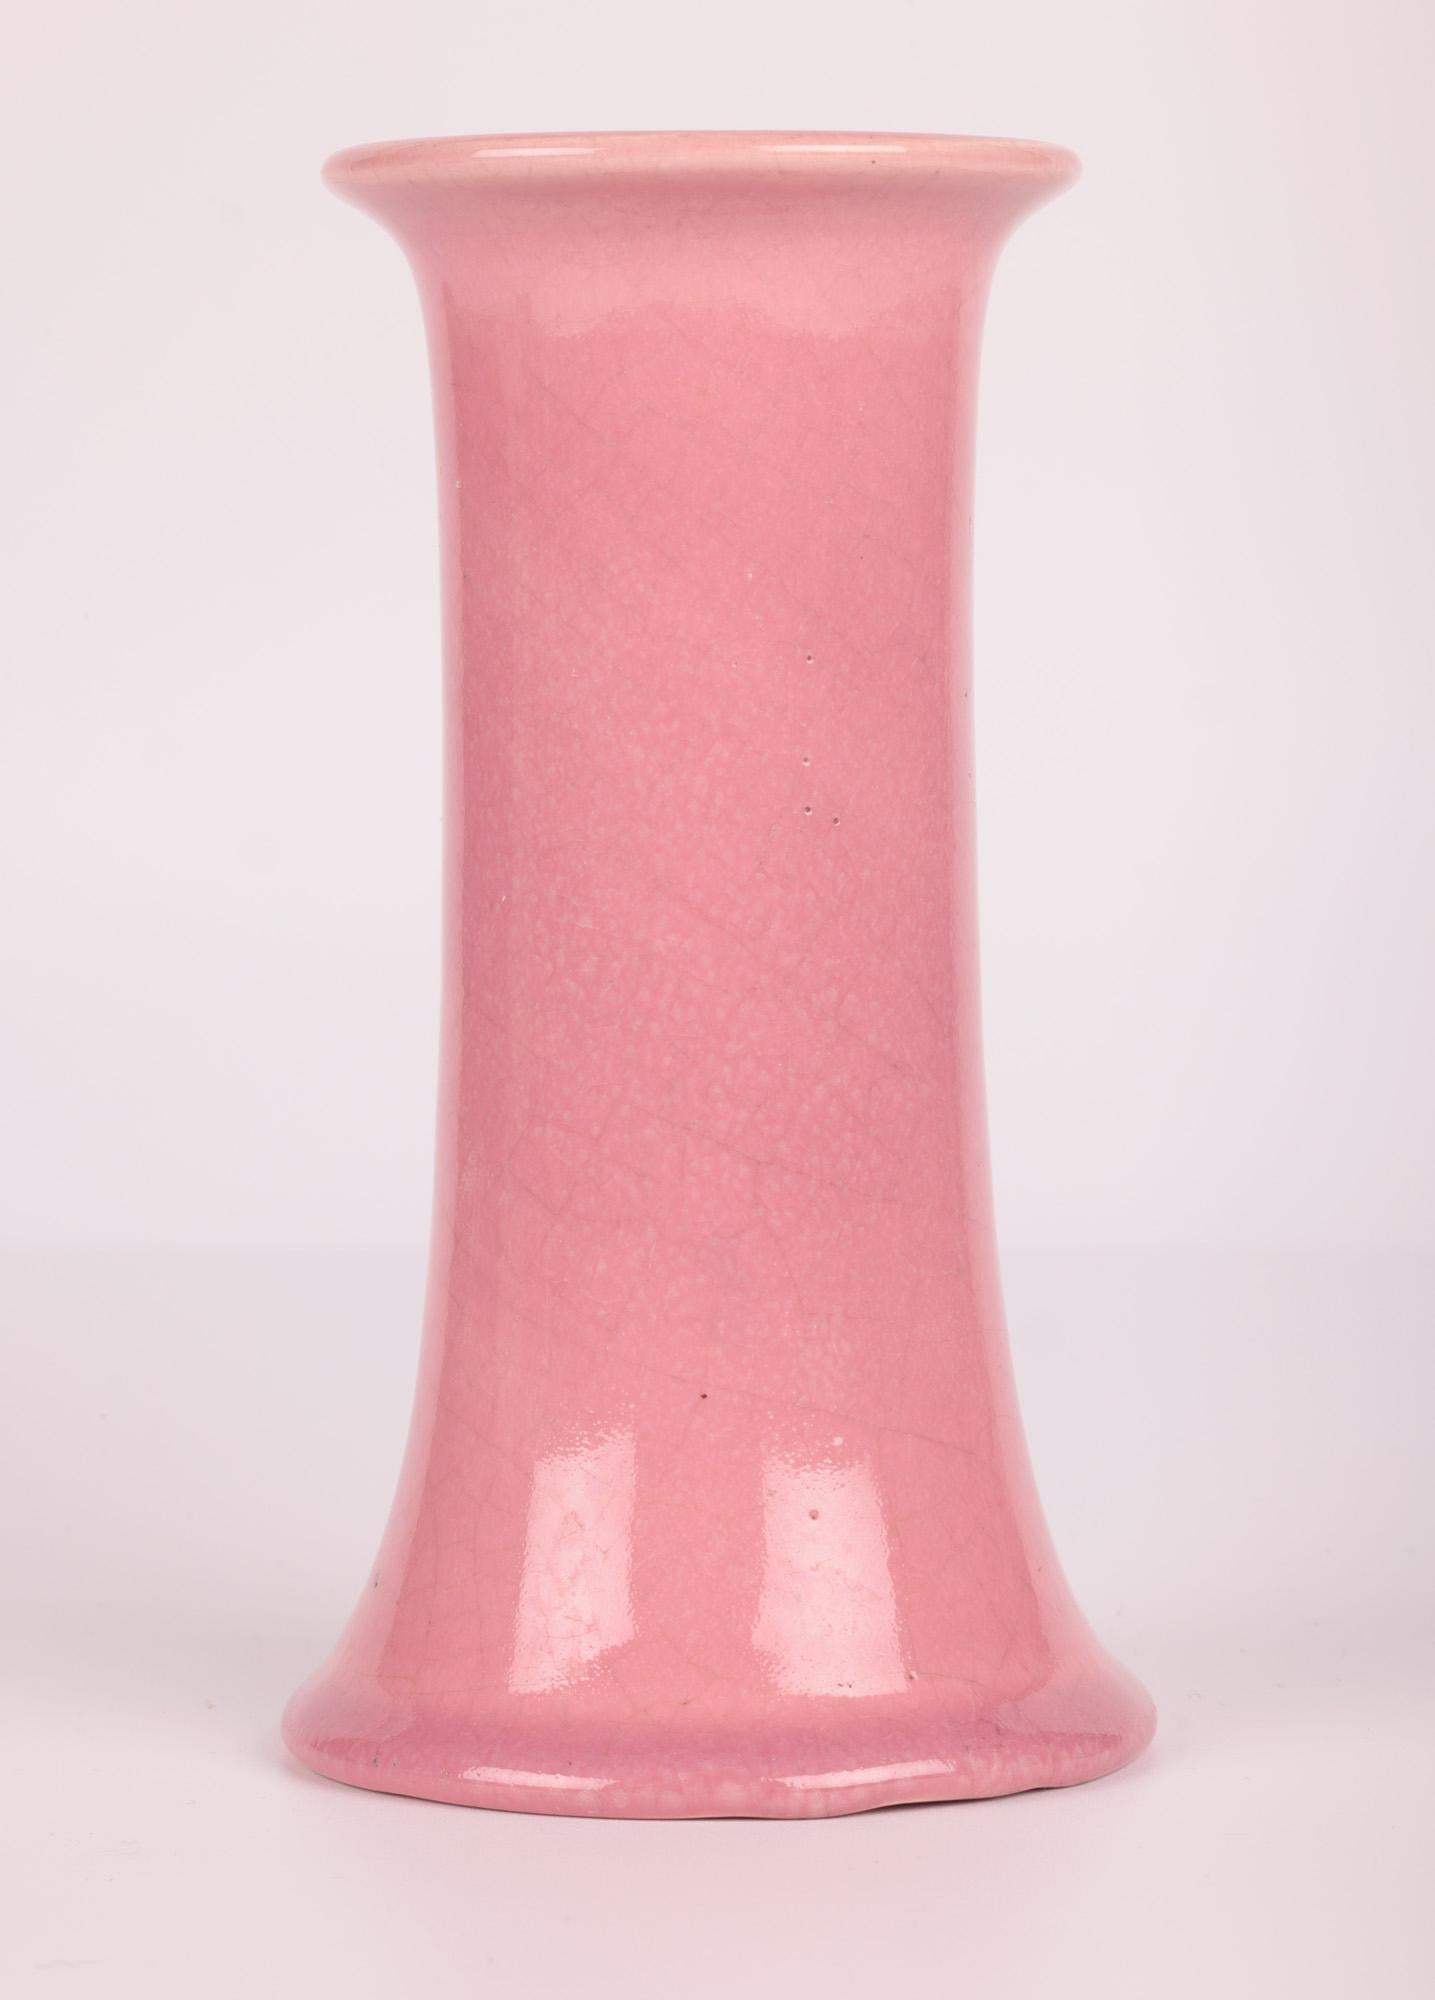 Bretby Arts & Crafts Pink Glazed Art Pottery Vase 8